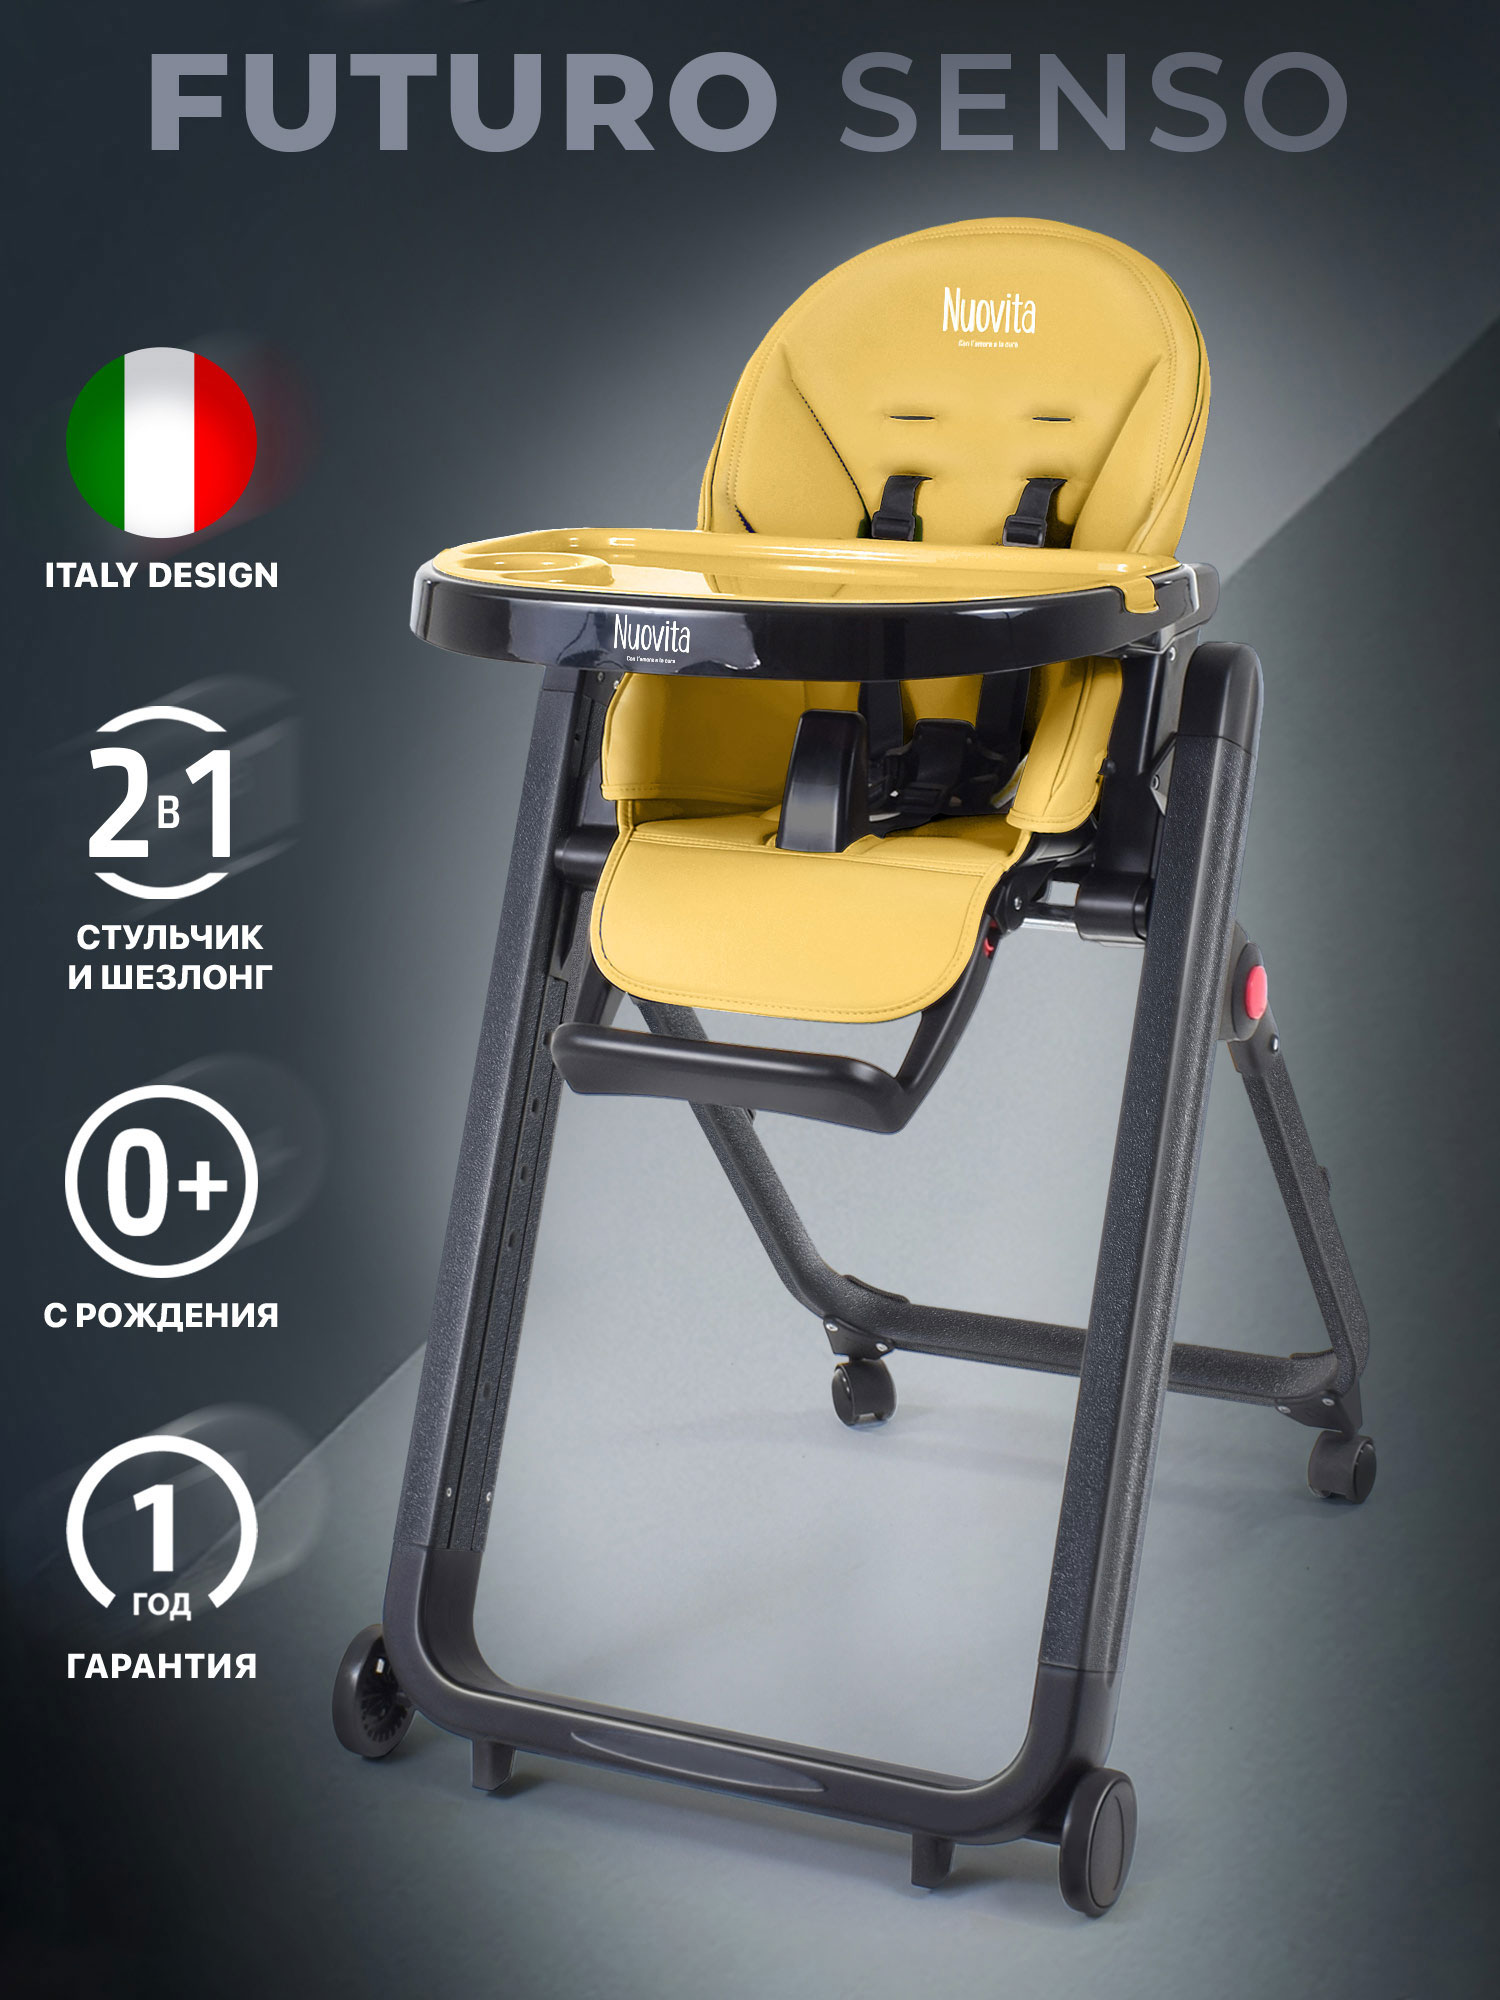 Стульчик для кормления Nuovita Futuro Senso Nero (Giallo/Желтый) стульчик для кормления nuovita futuro senso nero verde зеленый